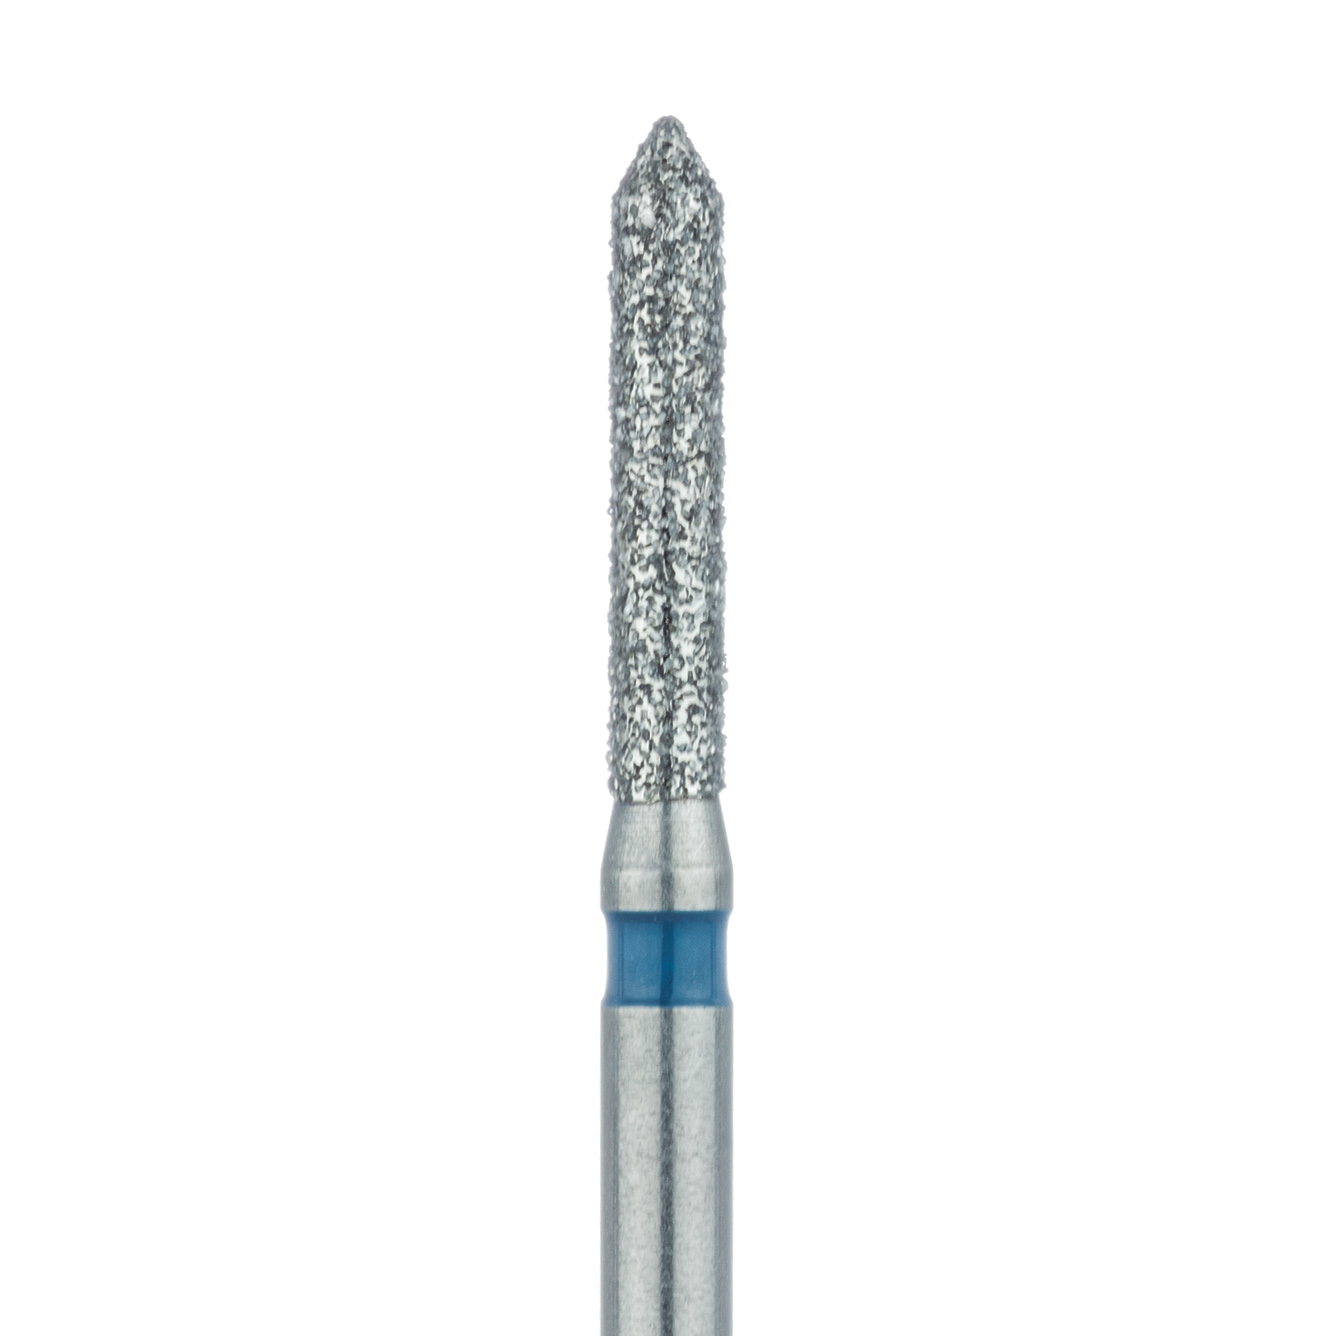 885-014-FG Pointed Tip Cylinder Diamond Bur 1.4mm Medium, FG